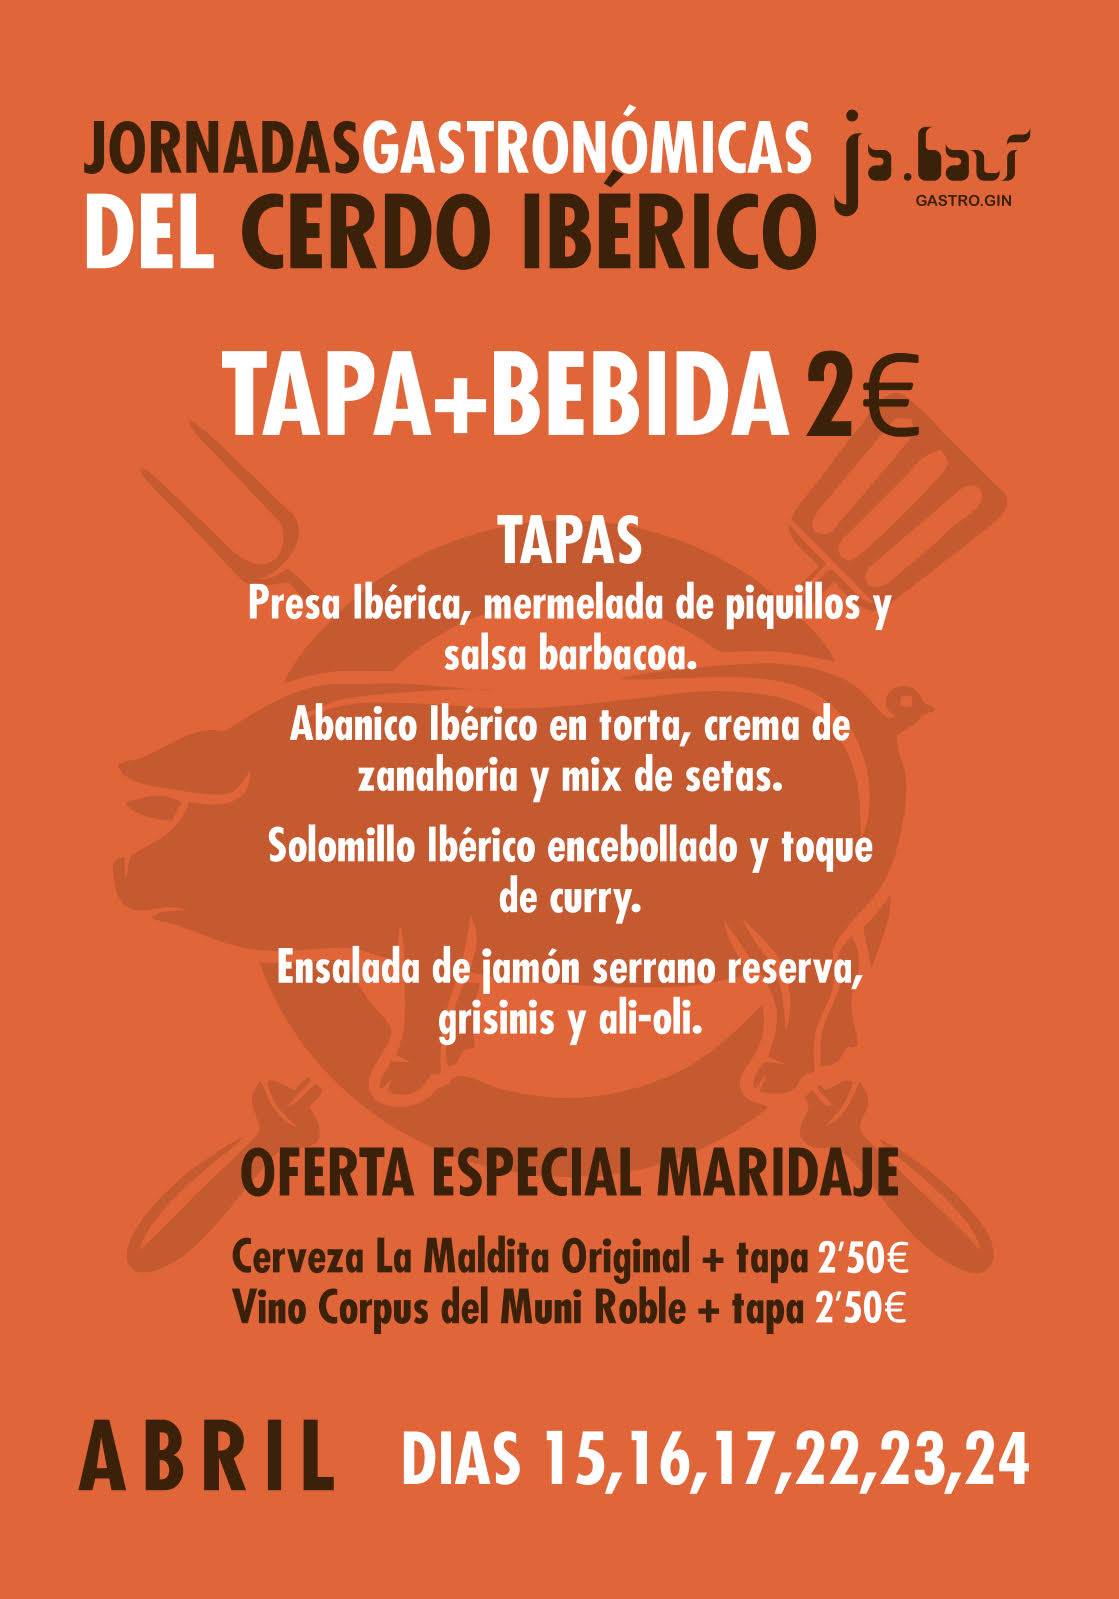 carta de las jornadas gastronomicas del cerdo iberico